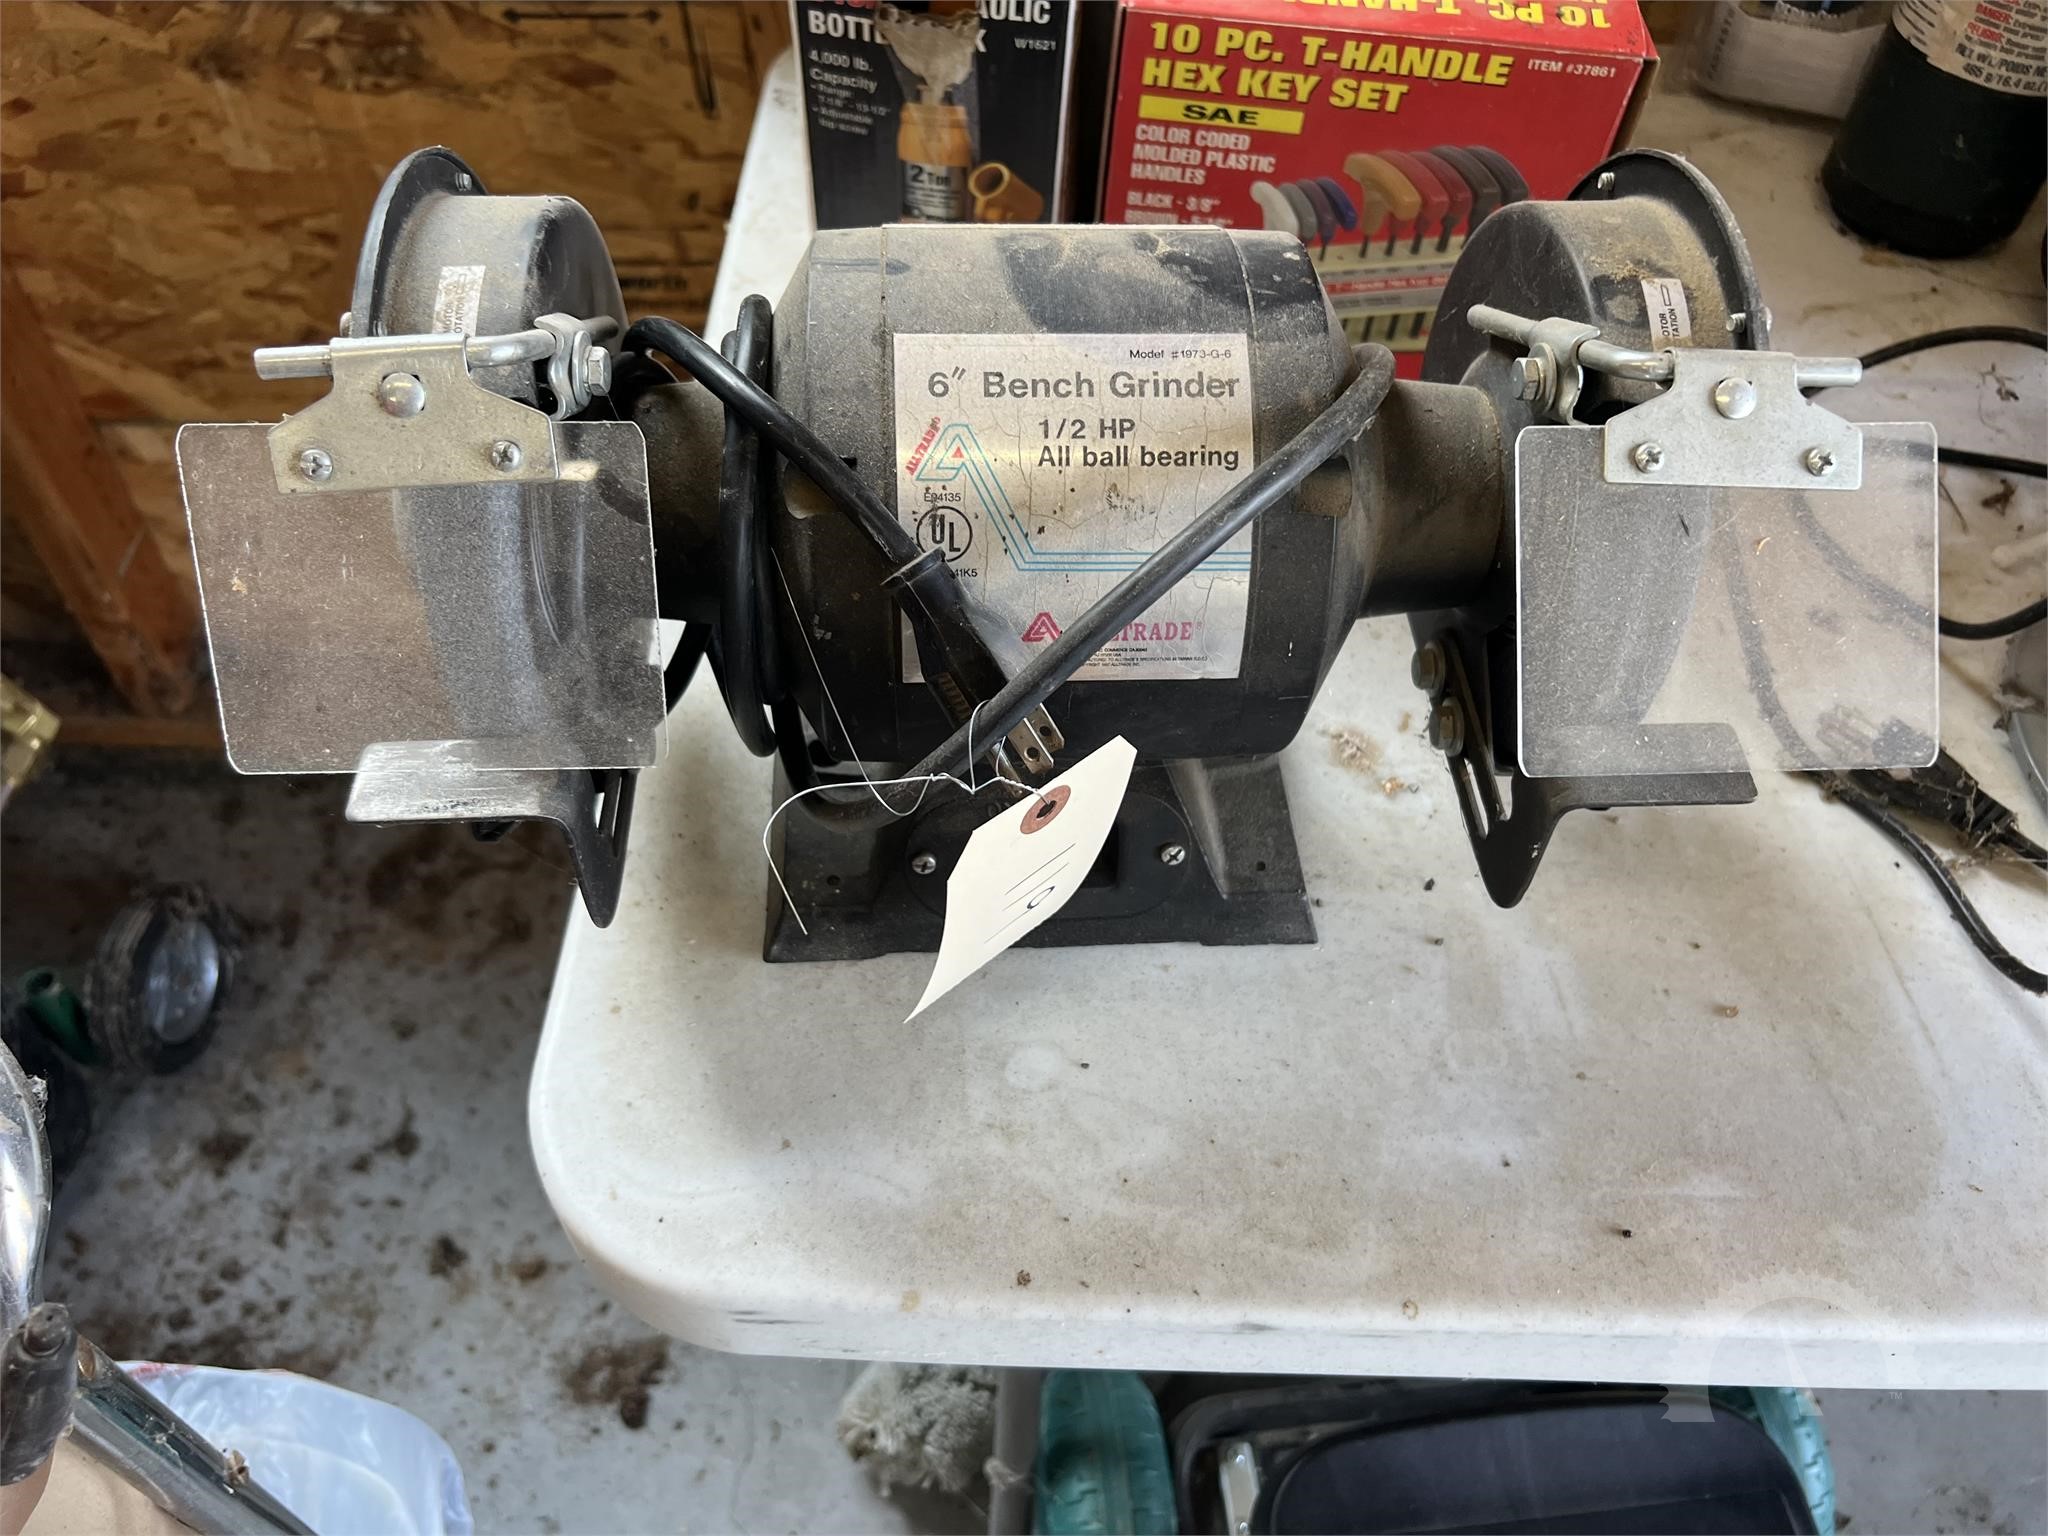 Mini Heat Press Machine, 4,17x 2,44 Portable Heat Press Small